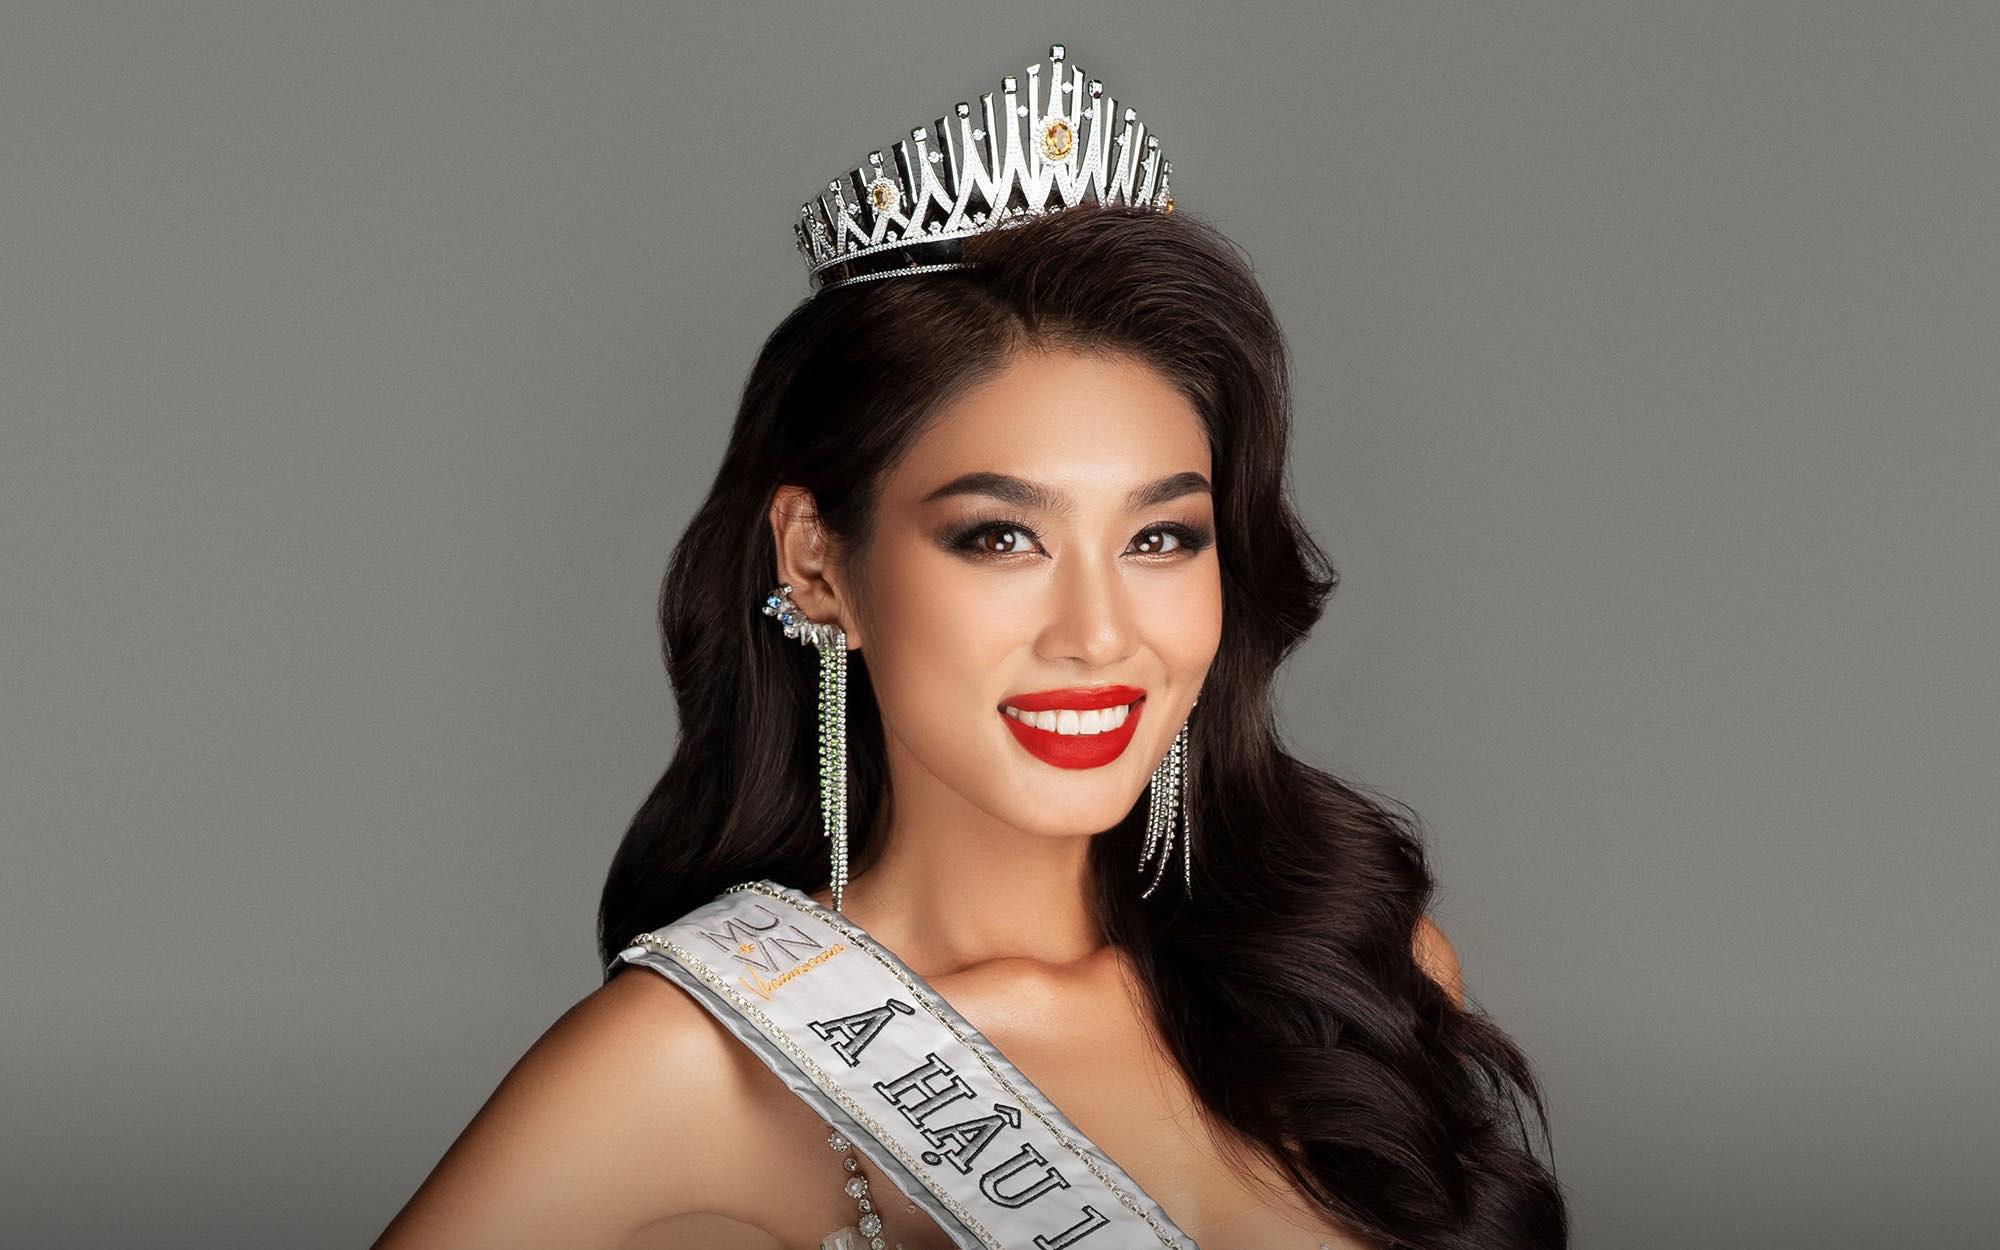 Á hậu Lê Thảo Nhi mất suất thi Miss Universe 2023